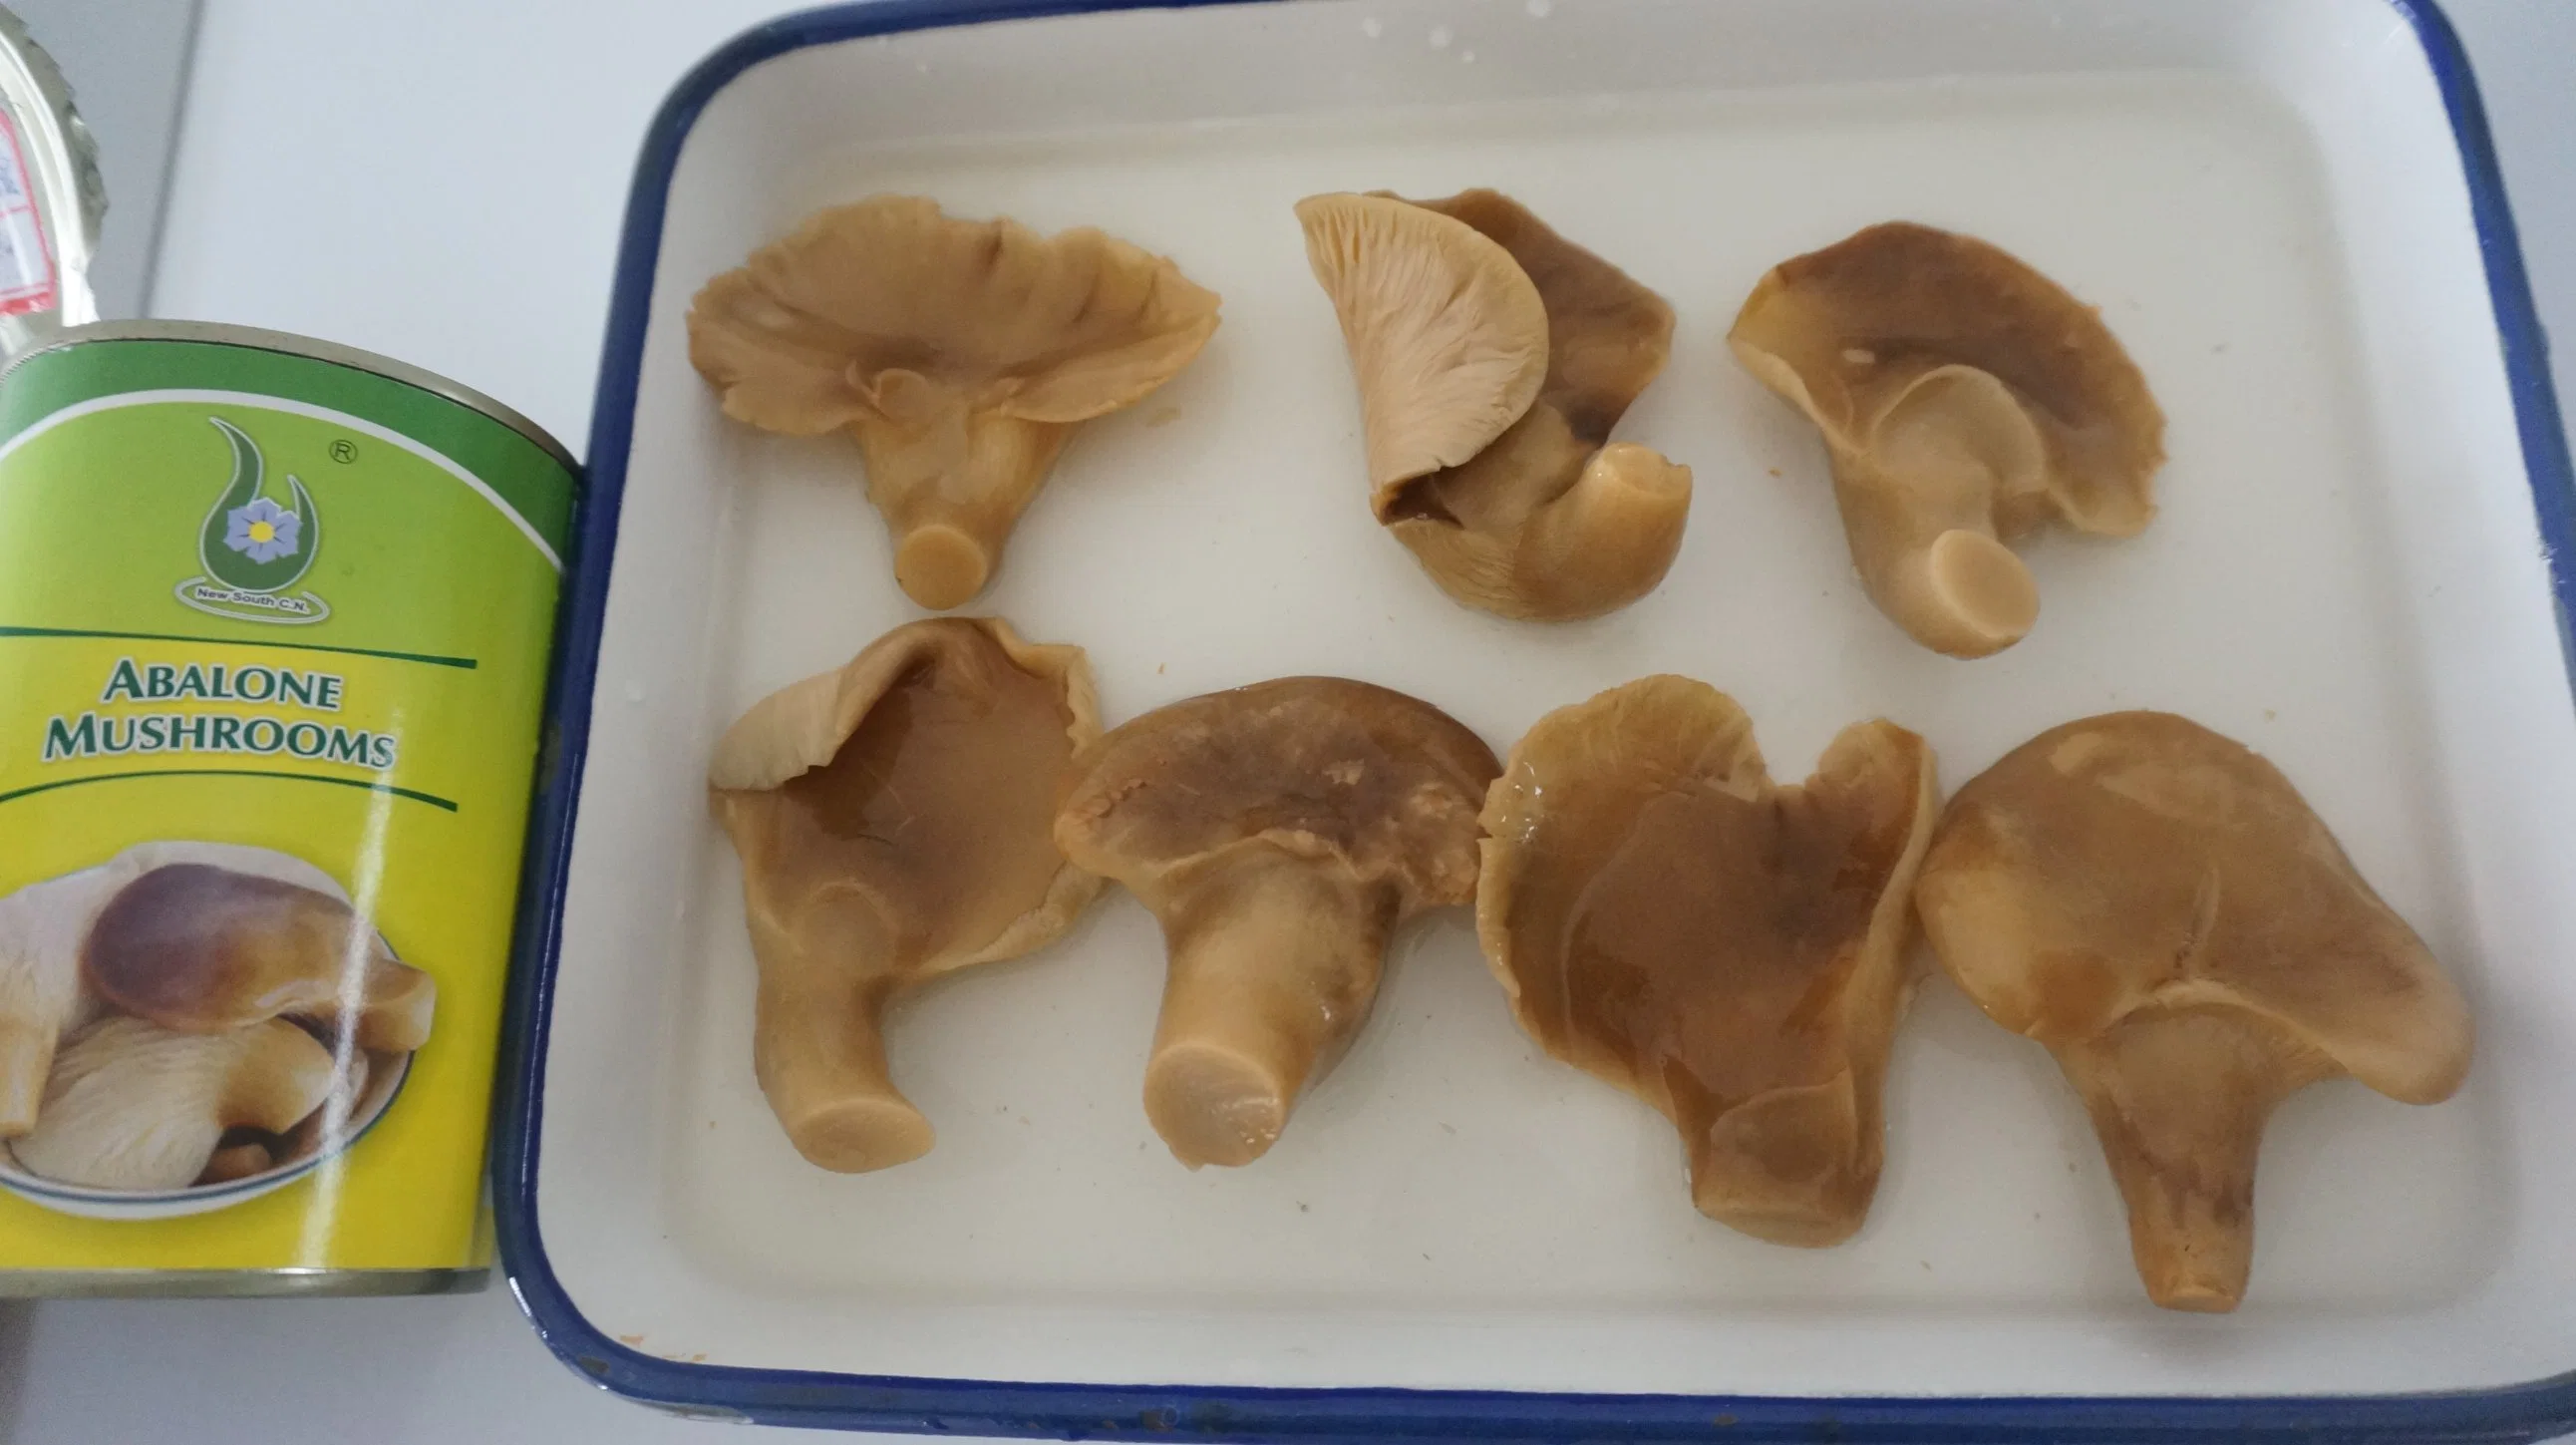 Huître en conserve/ champignon d'abalone (pleurotus ostratus) exportation de produits au Vietnam